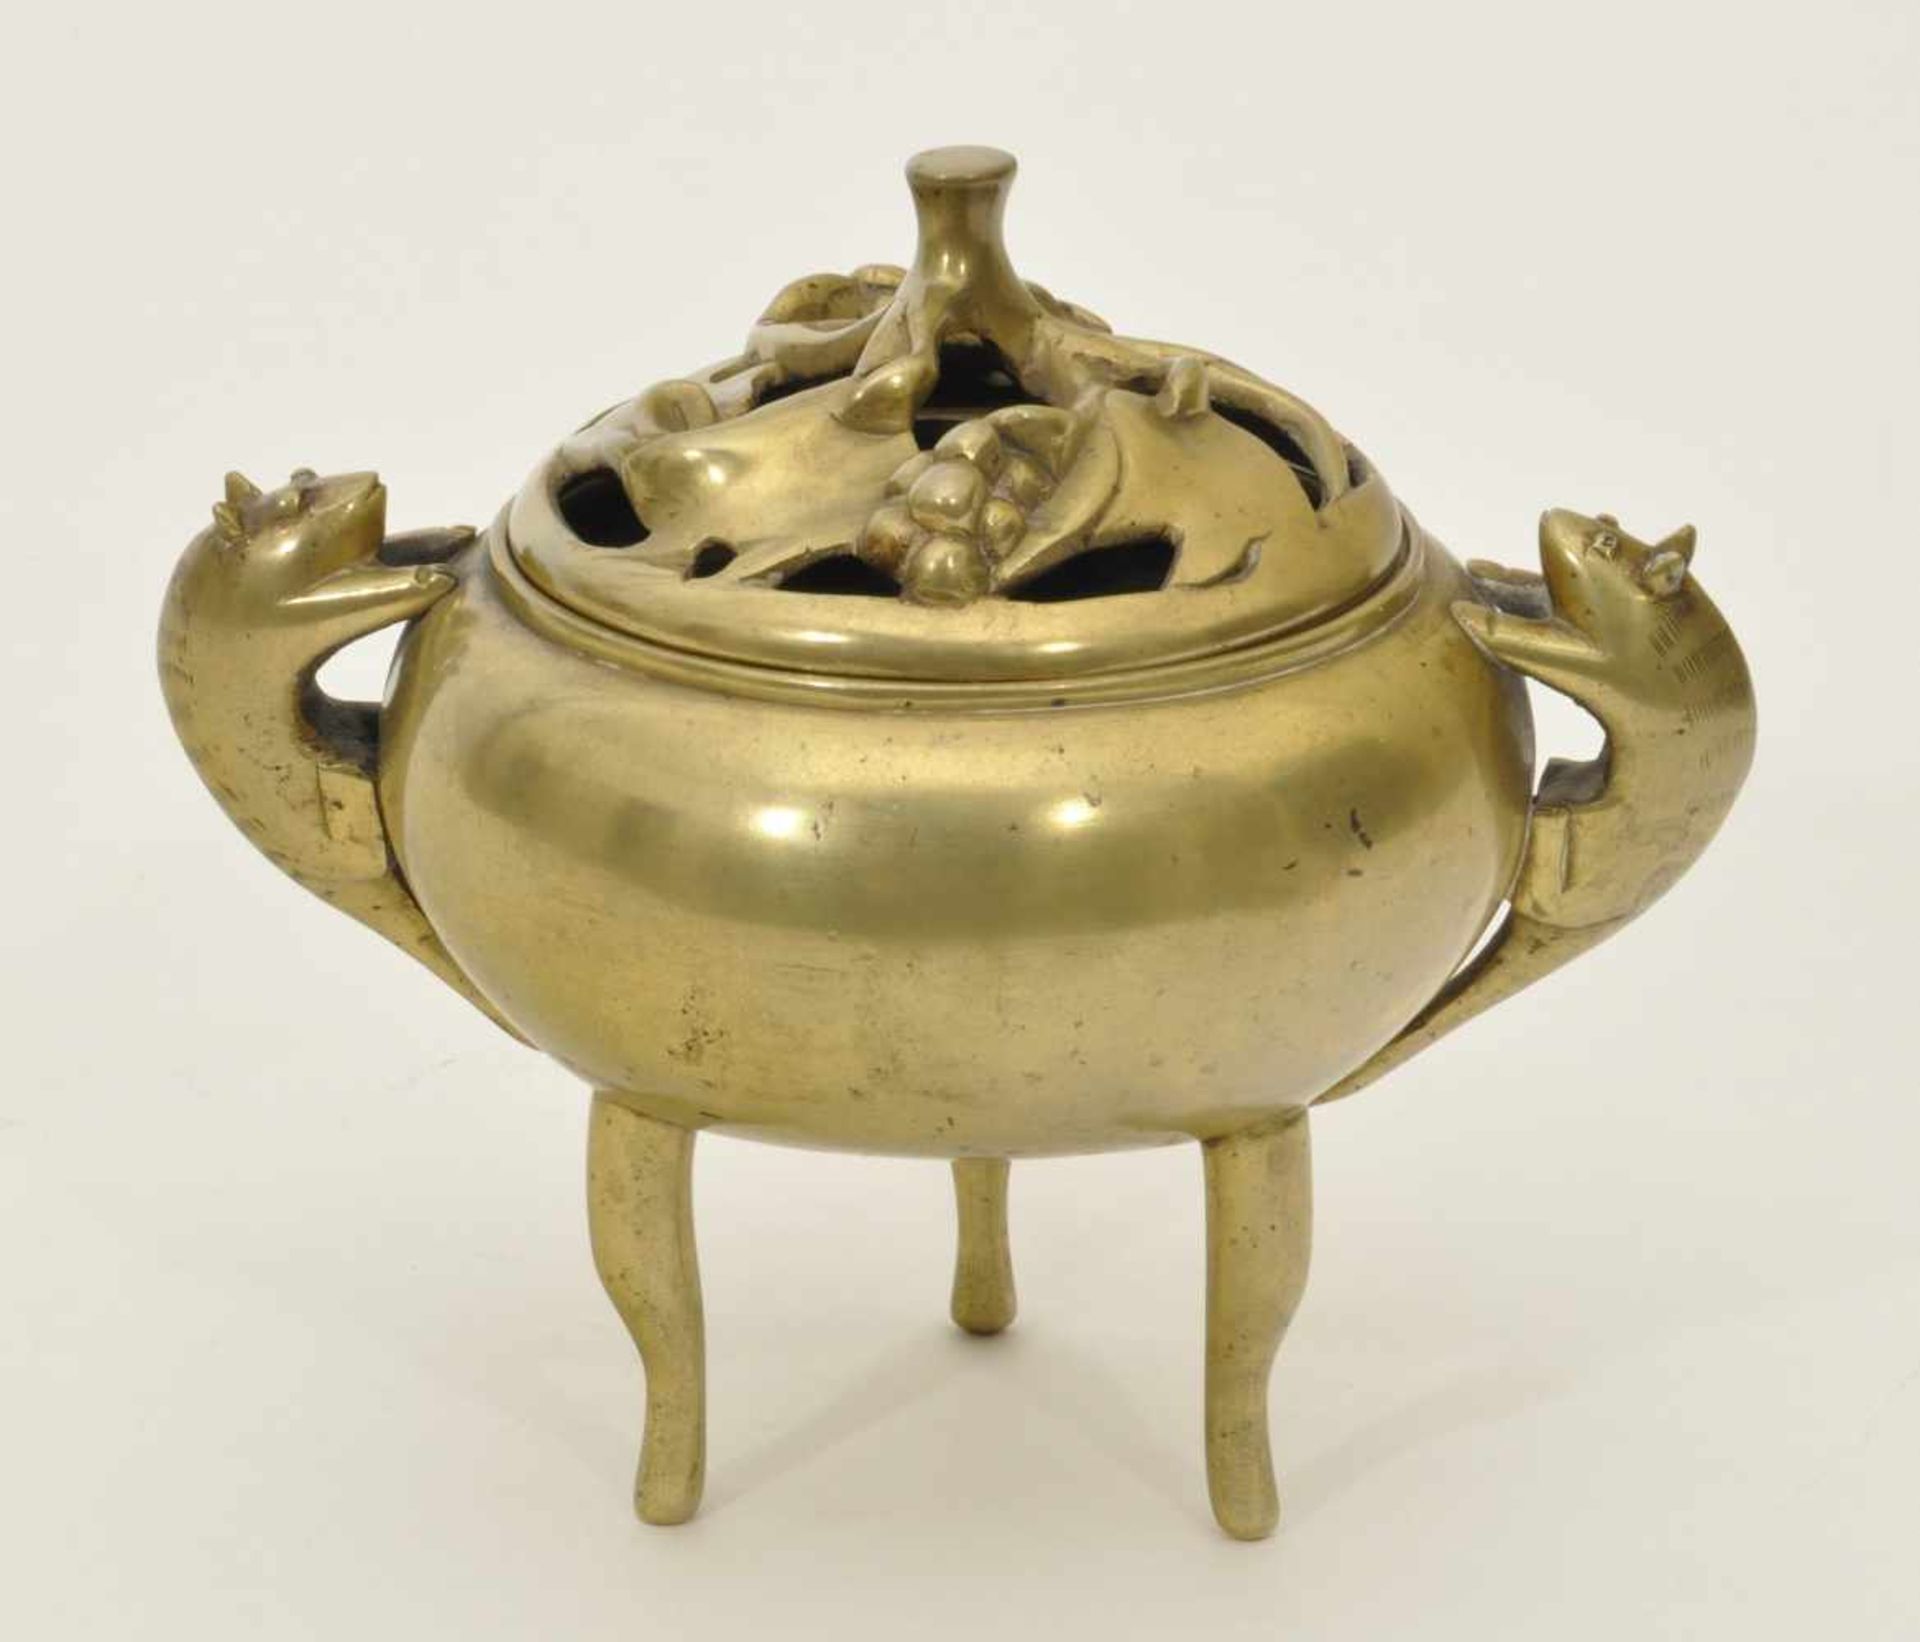 Räuchergefäß China, um 1900, Bronze mit Vergoldung, glatter Korpus, 2 figürliche gestaltete